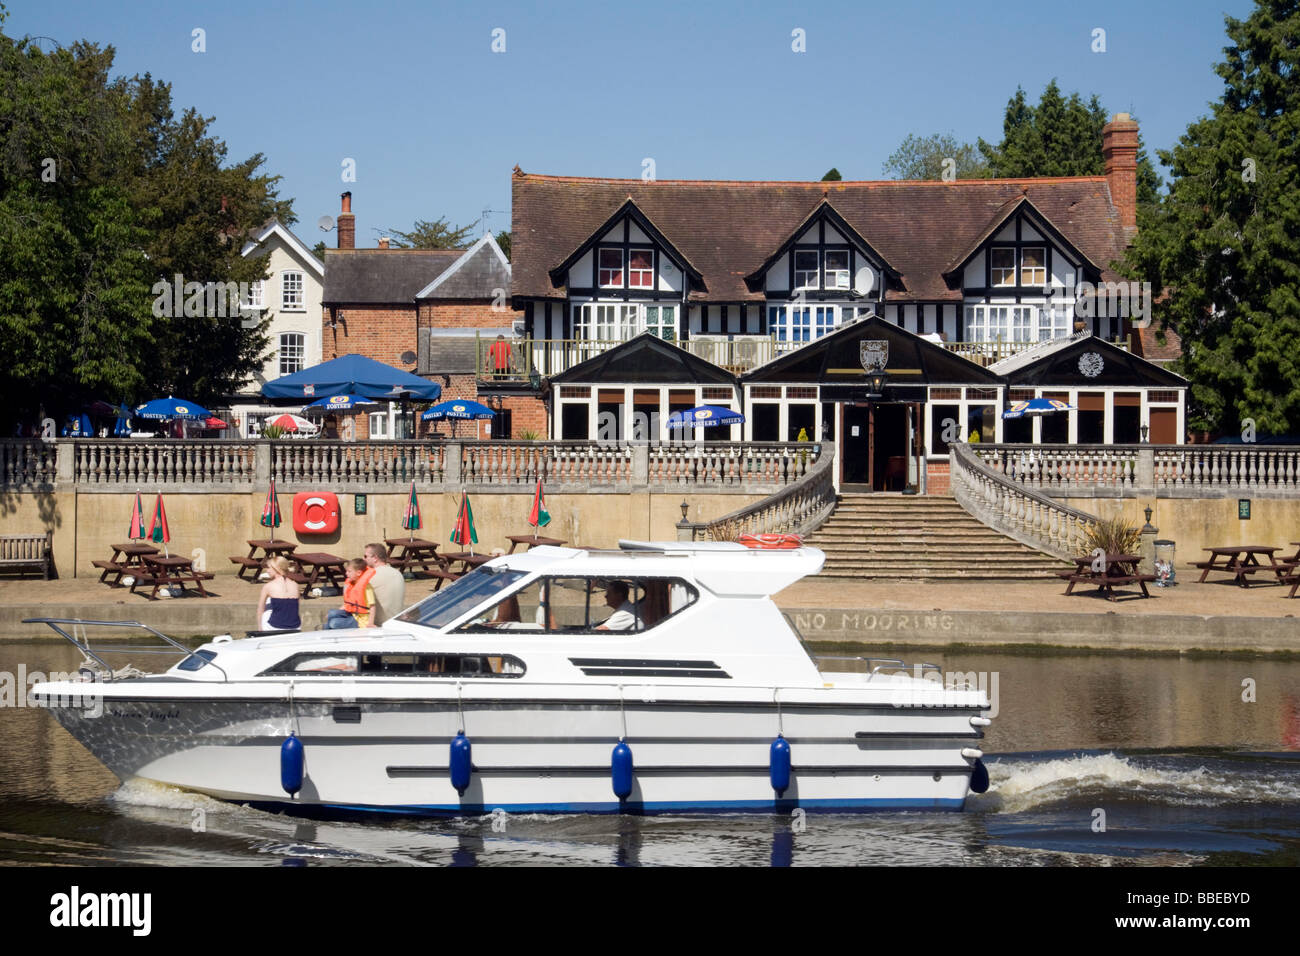 Un bateau à moteur passe le boathouse pub restaurant sur la Tamise à Wallingford, Oxfordshire, UK Banque D'Images